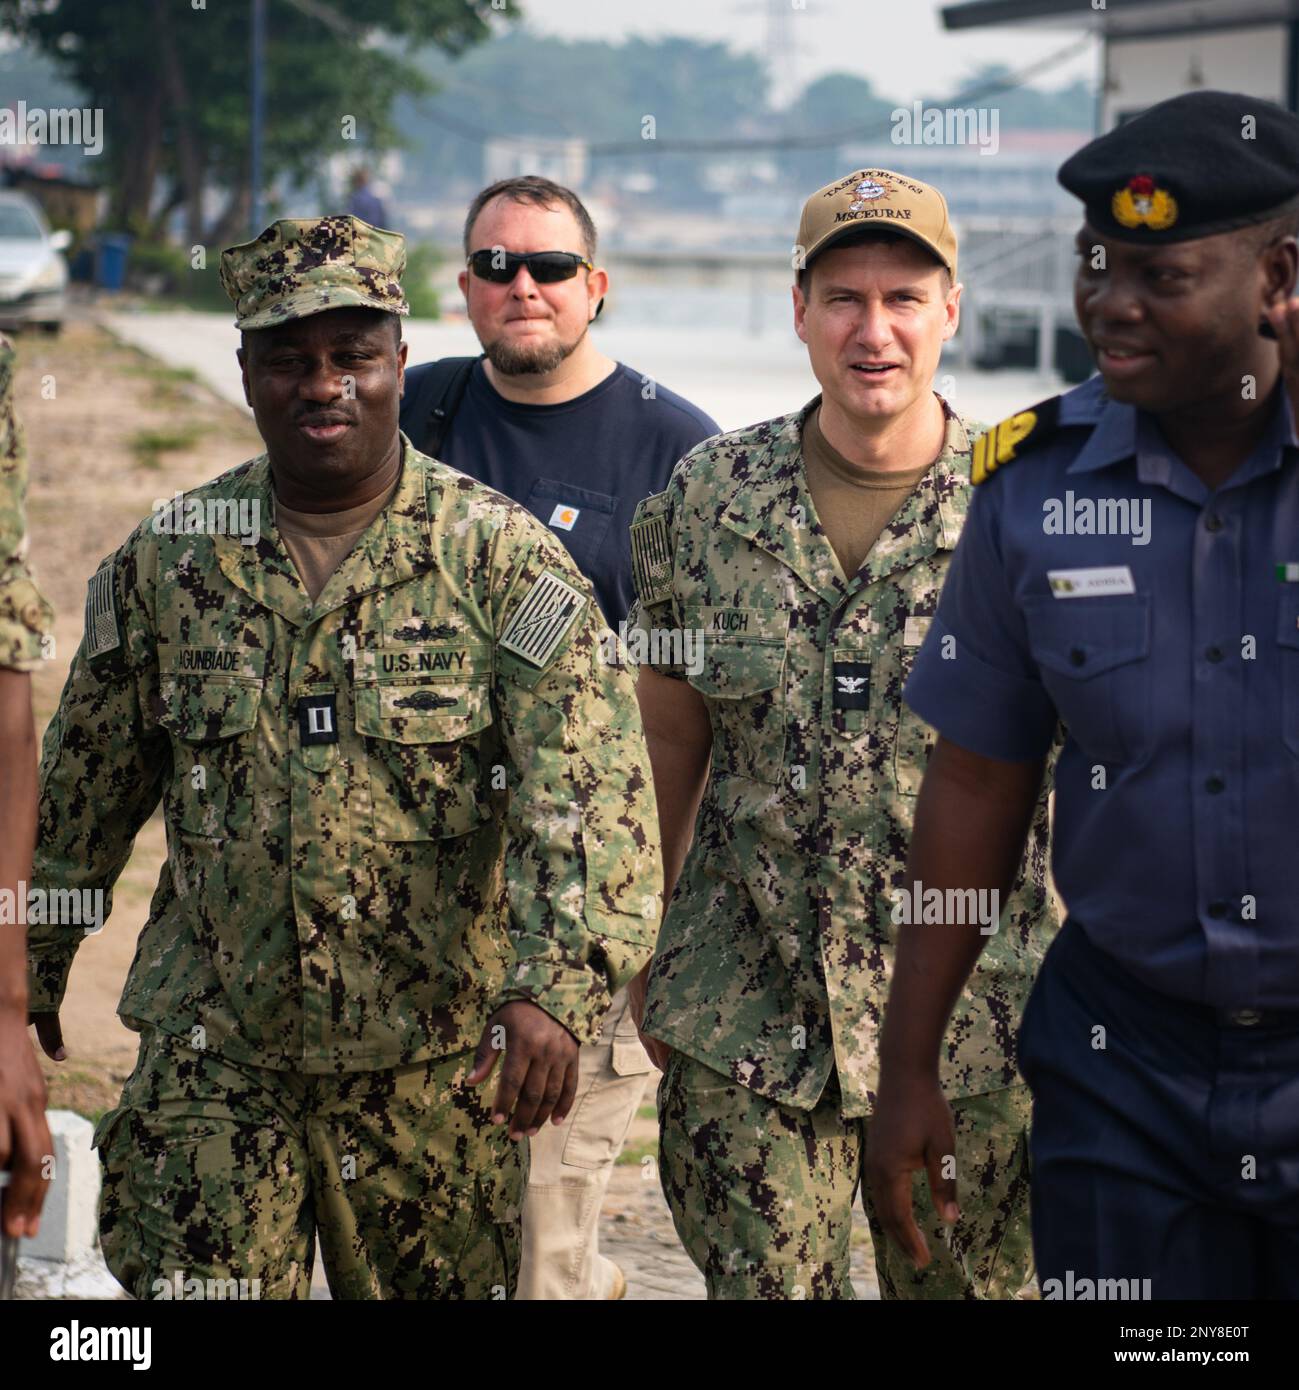 230130-N-DK722-1019 (Jan. 30, 2023) LAGOS, Nigeria – U.S. Navy